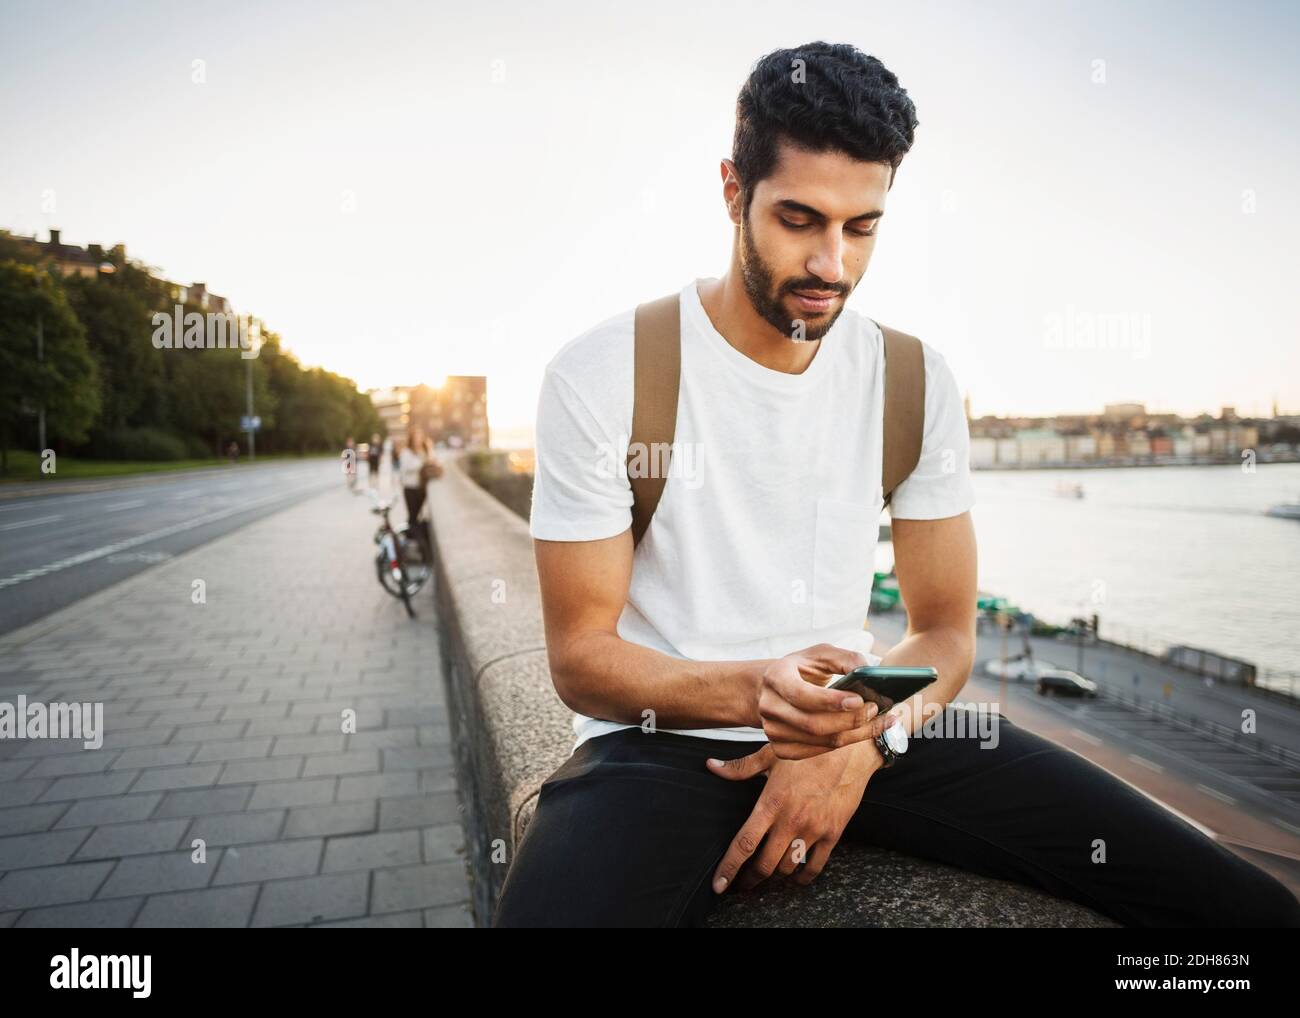 Un touriste utilise un smartphone tout en étant assis sur un mur de soutènement de pont Banque D'Images